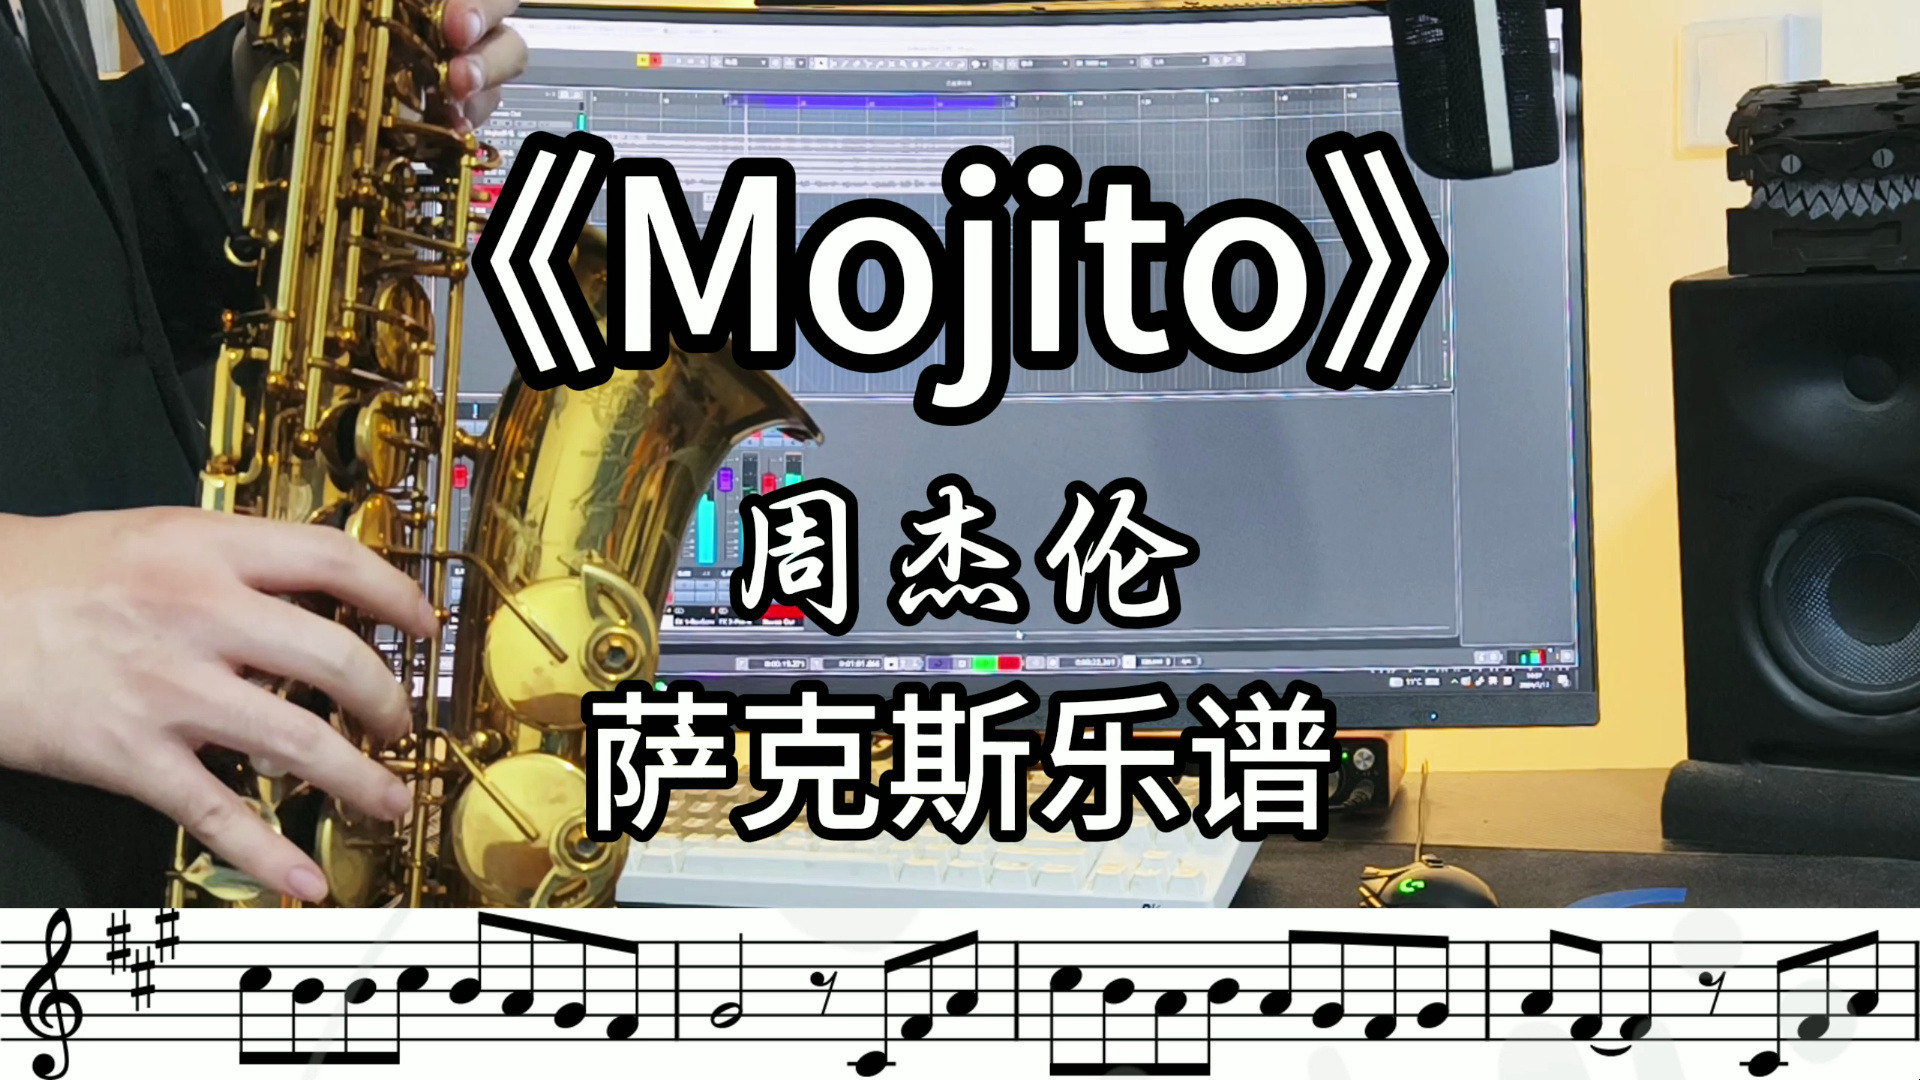 【萨克斯谱/伴奏】《mojito》周杰伦